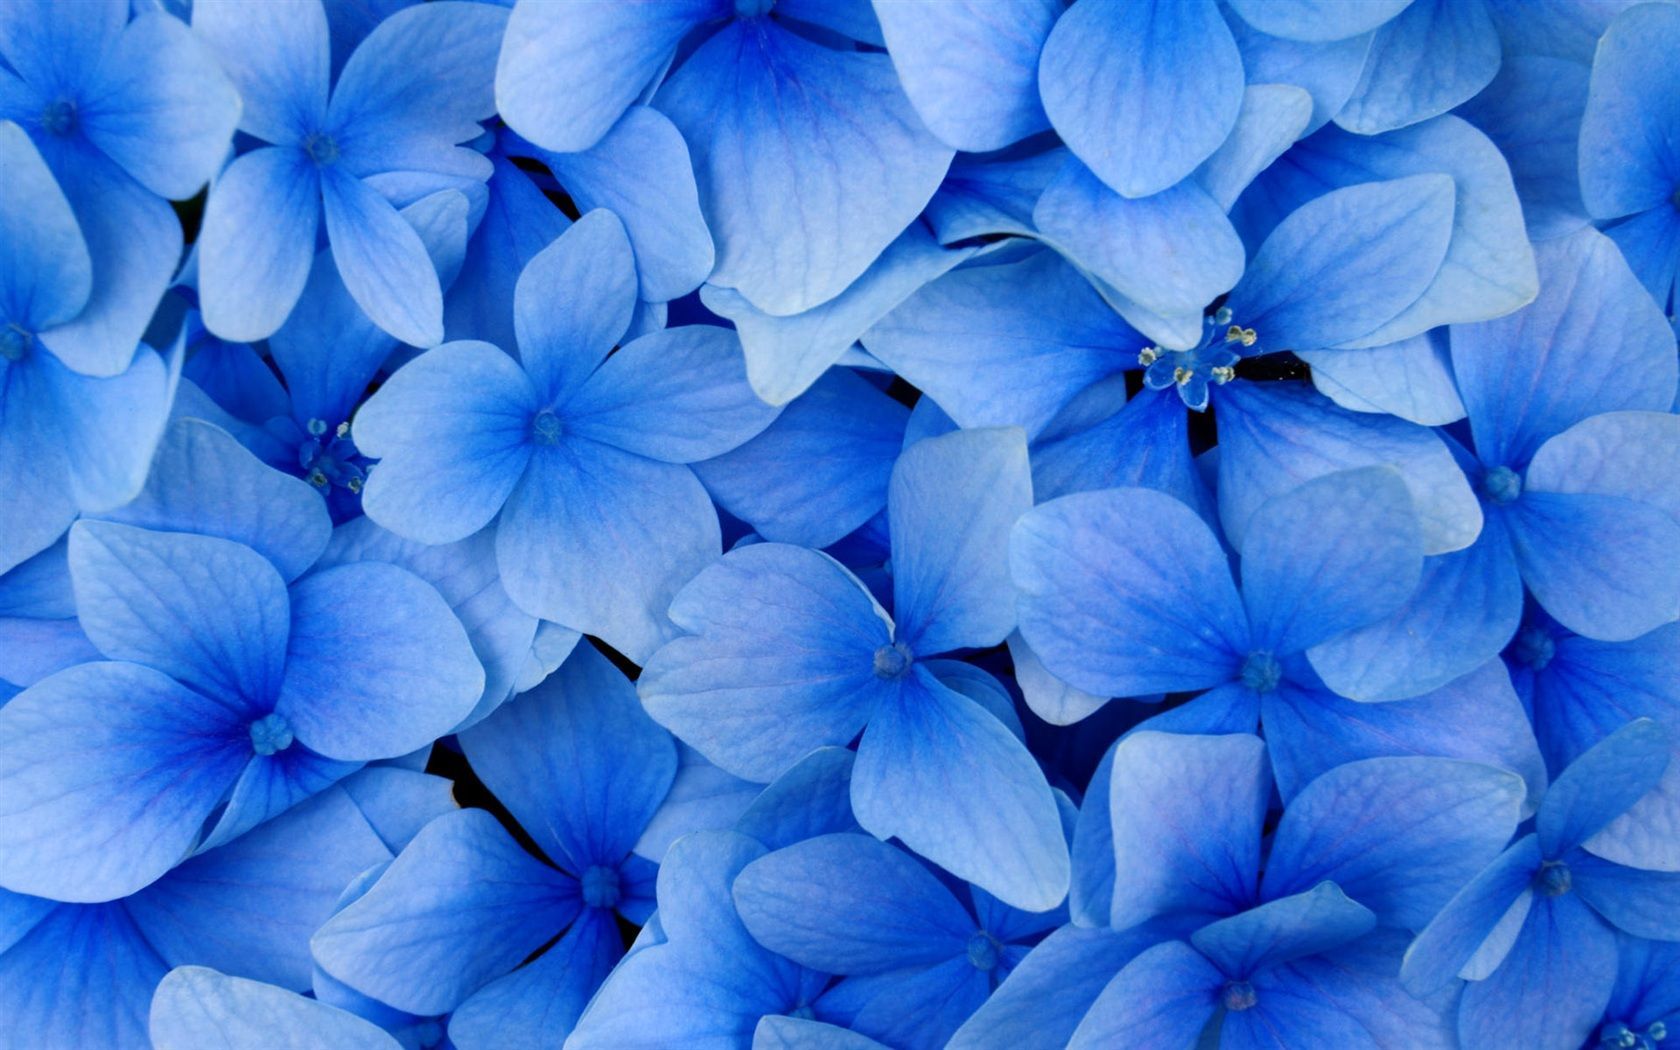  Blaue Hintergrundbild 1680x1050. blaue Blumen Hintergrundbilder. Blue flower wallpaper, Blue hydrangea, Blue flowers